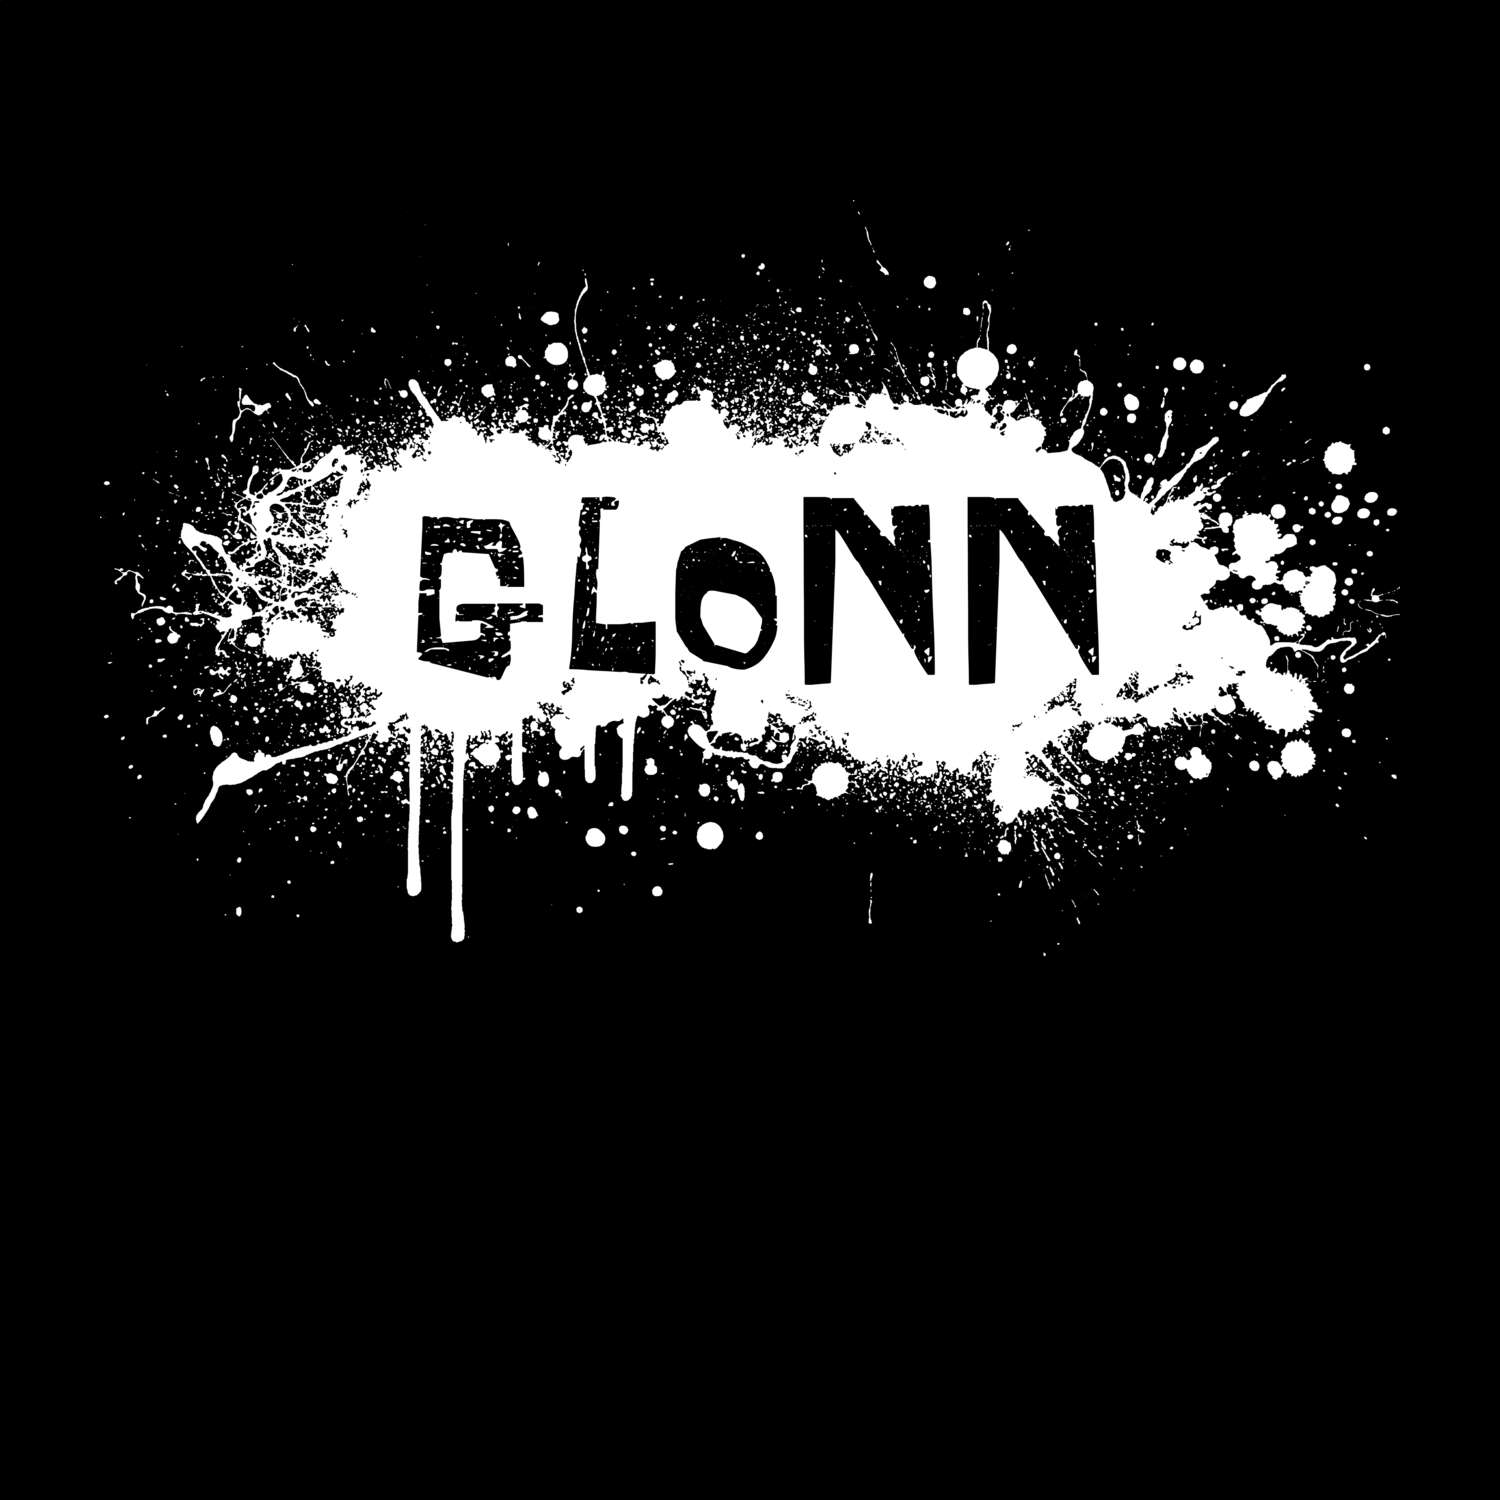 Glonn T-Shirt »Paint Splash Punk«